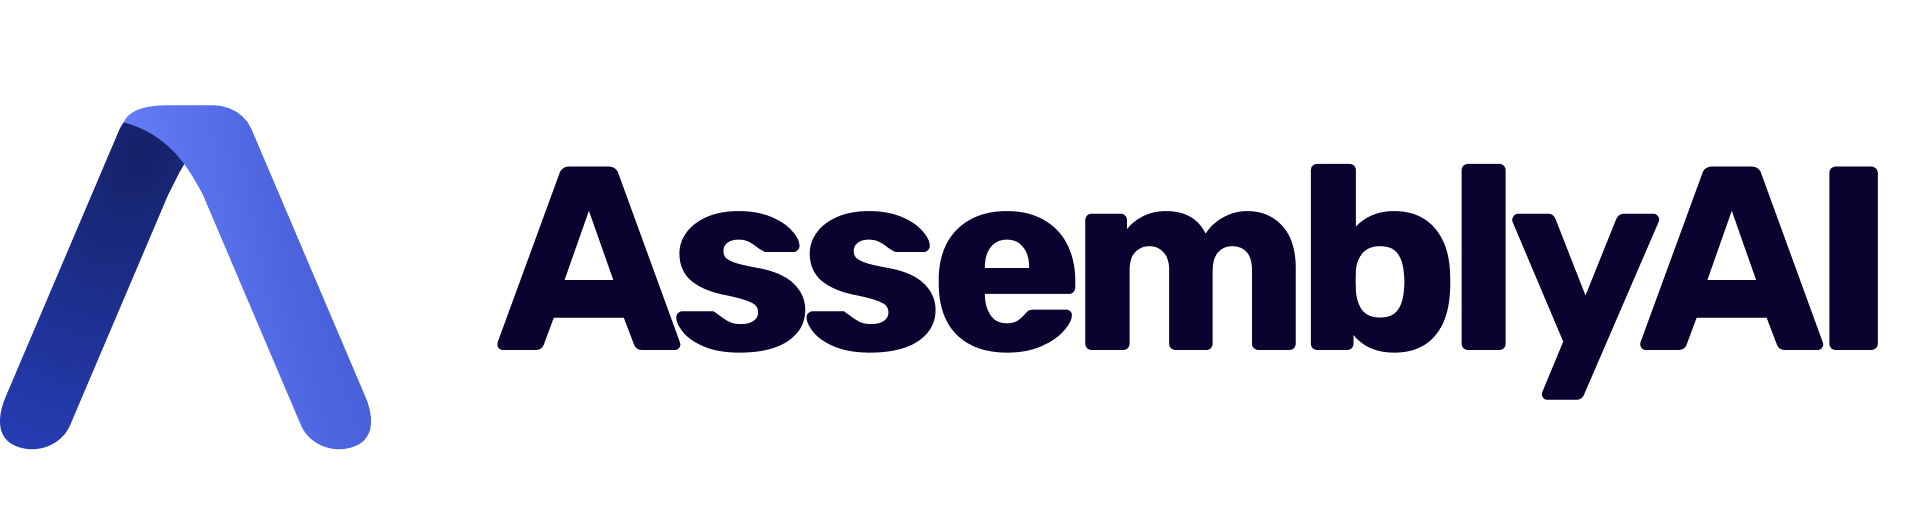 Assebly Ai's logo